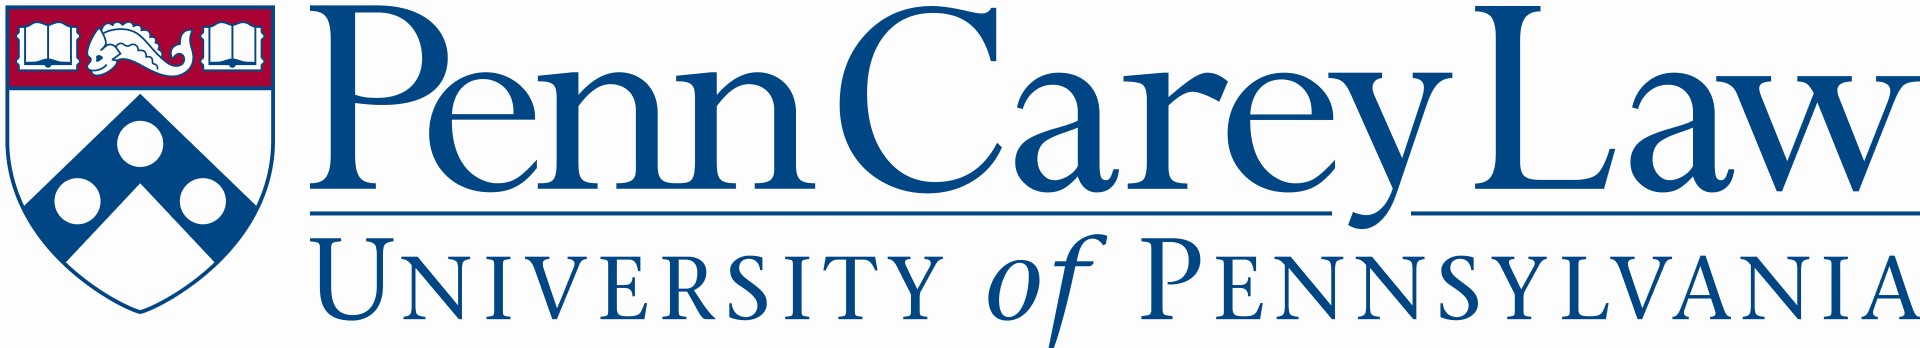 UPenn Carey Law School Logo